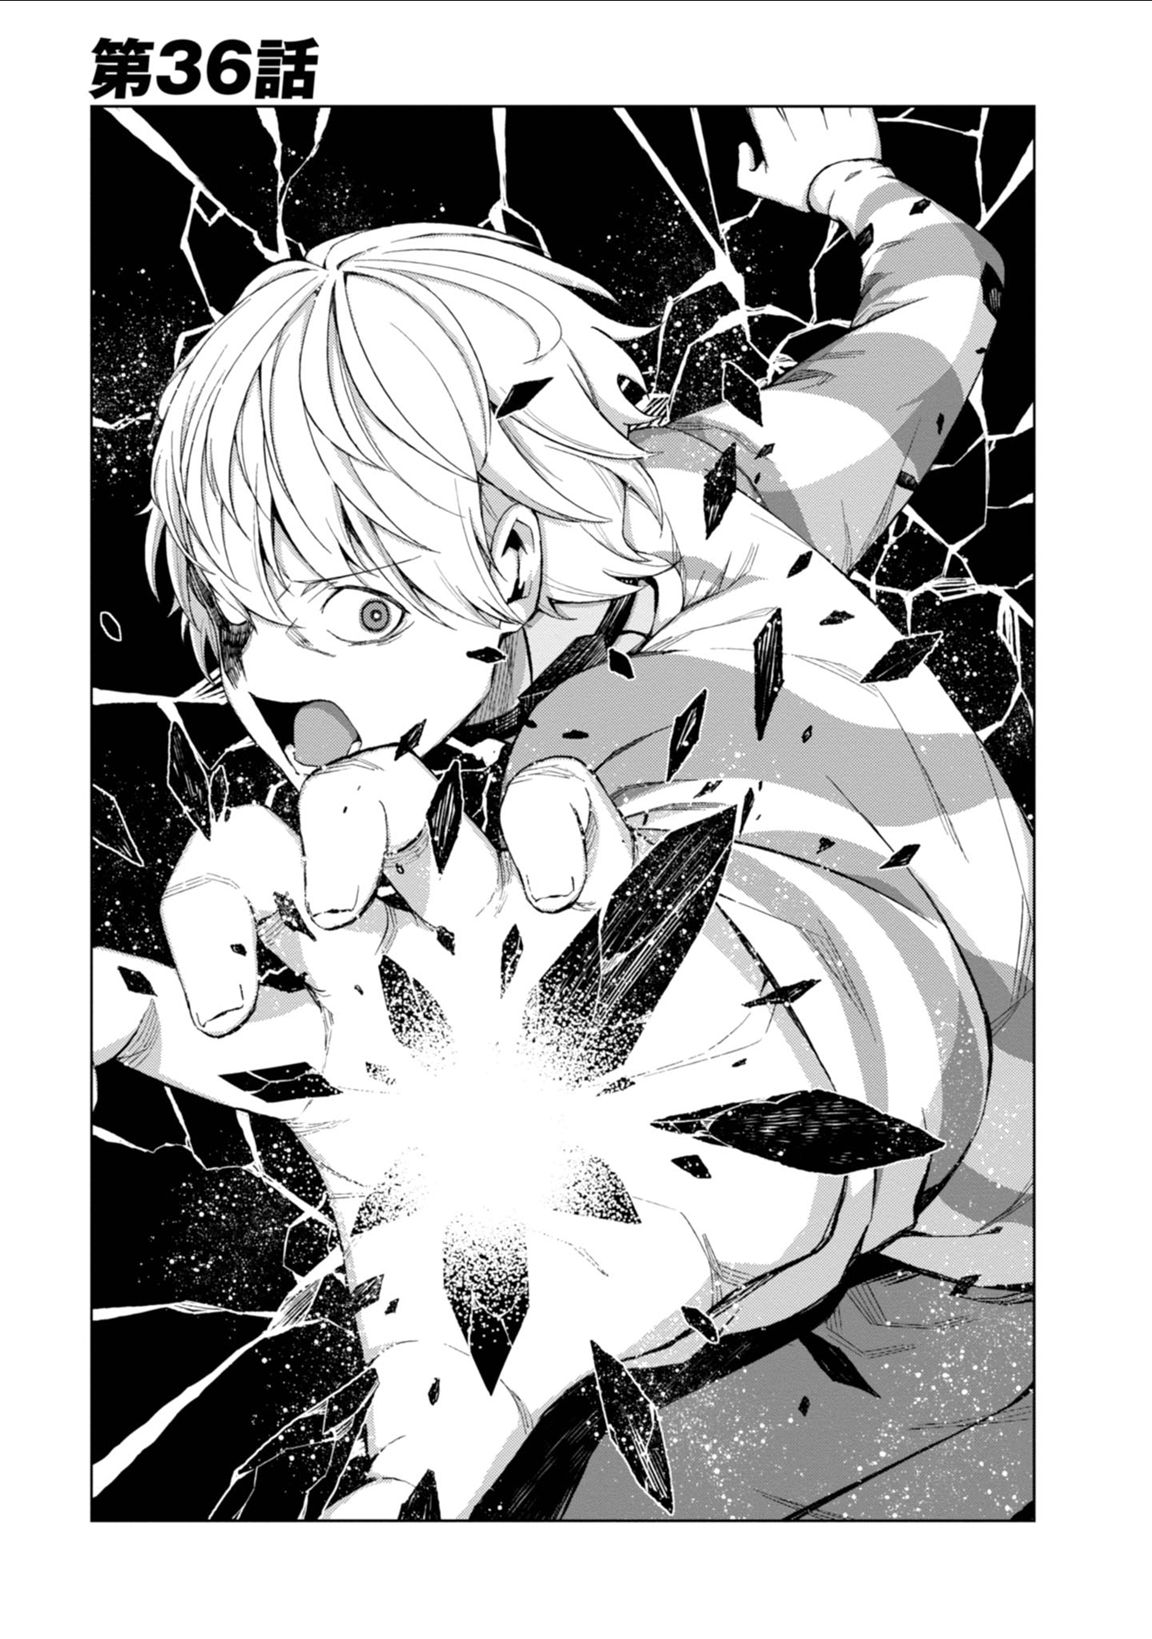 Toaru Kagaku no Accelerator Manga Volume 06, Toaru Majutsu no Index Wiki